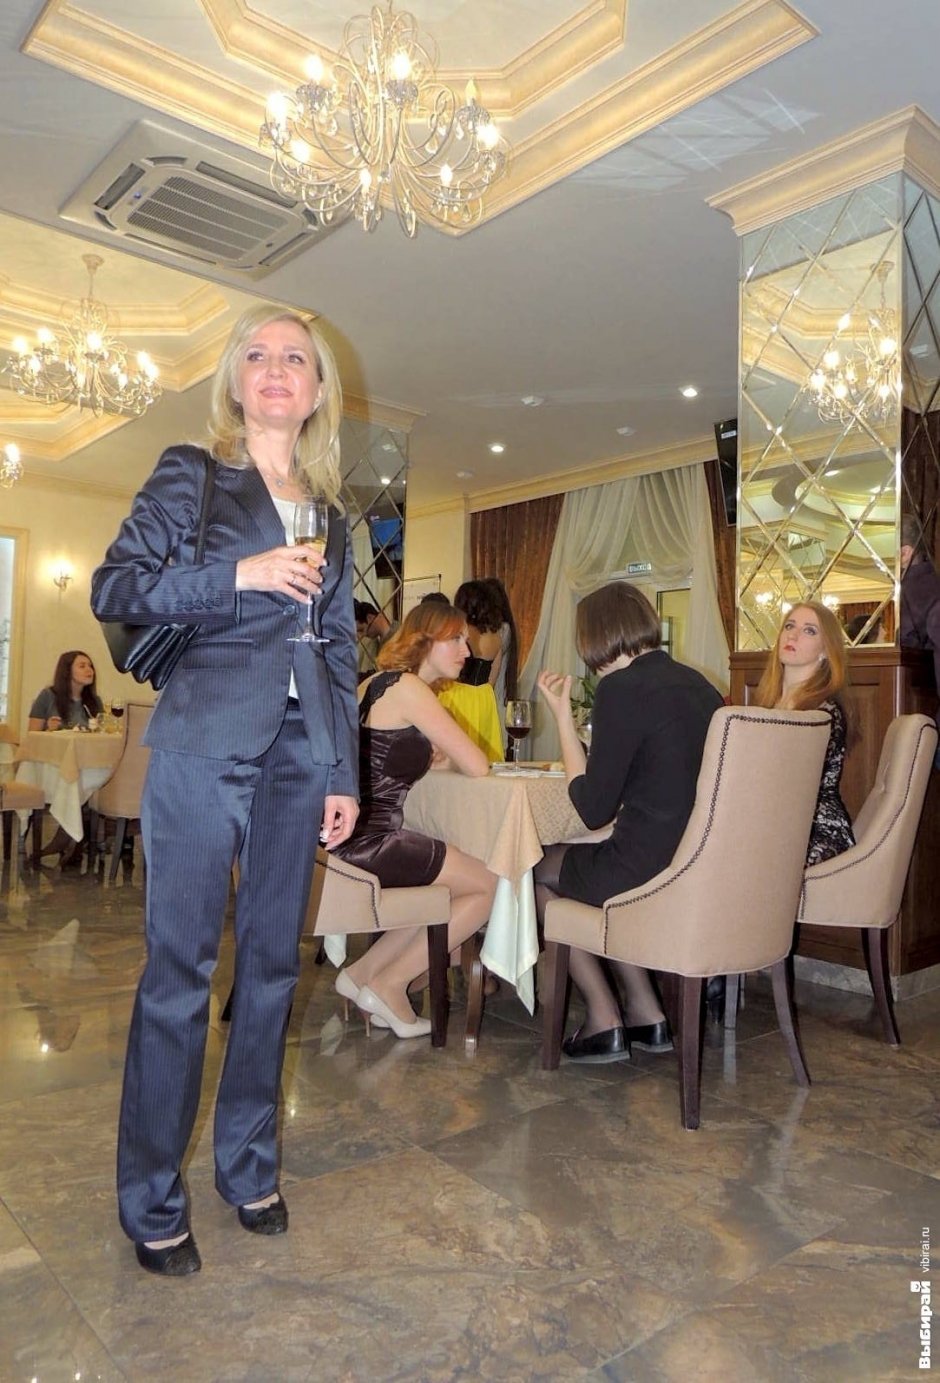 Открытие отеля и ресторана Crystal в Краснодаре